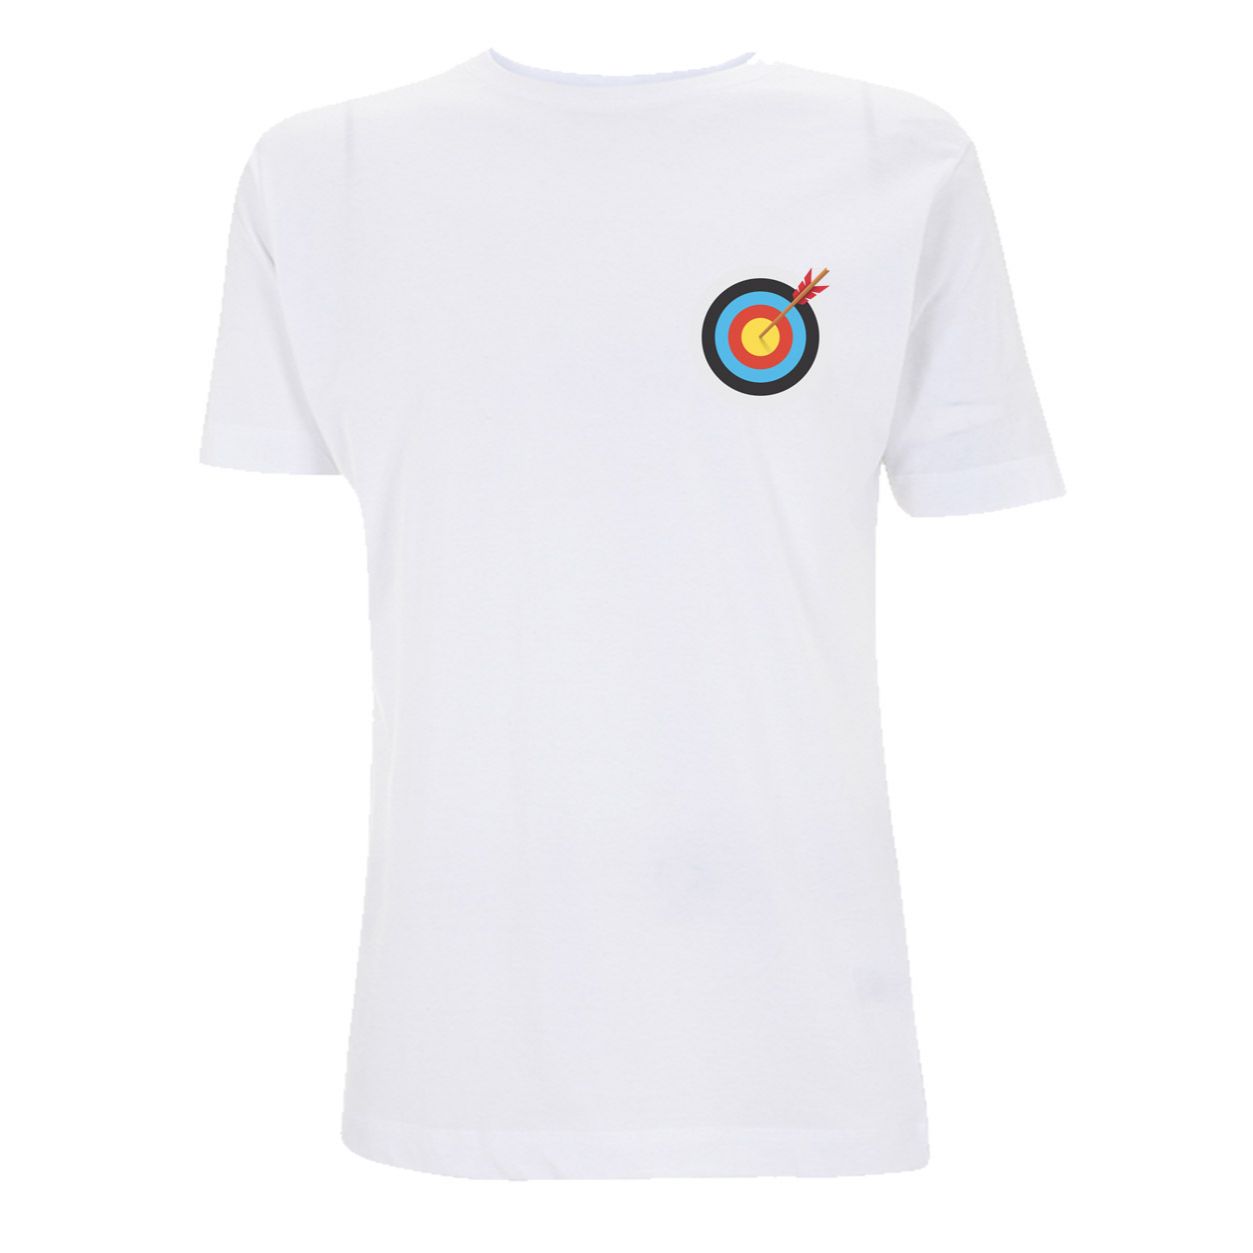 Archery Target T-Shirt